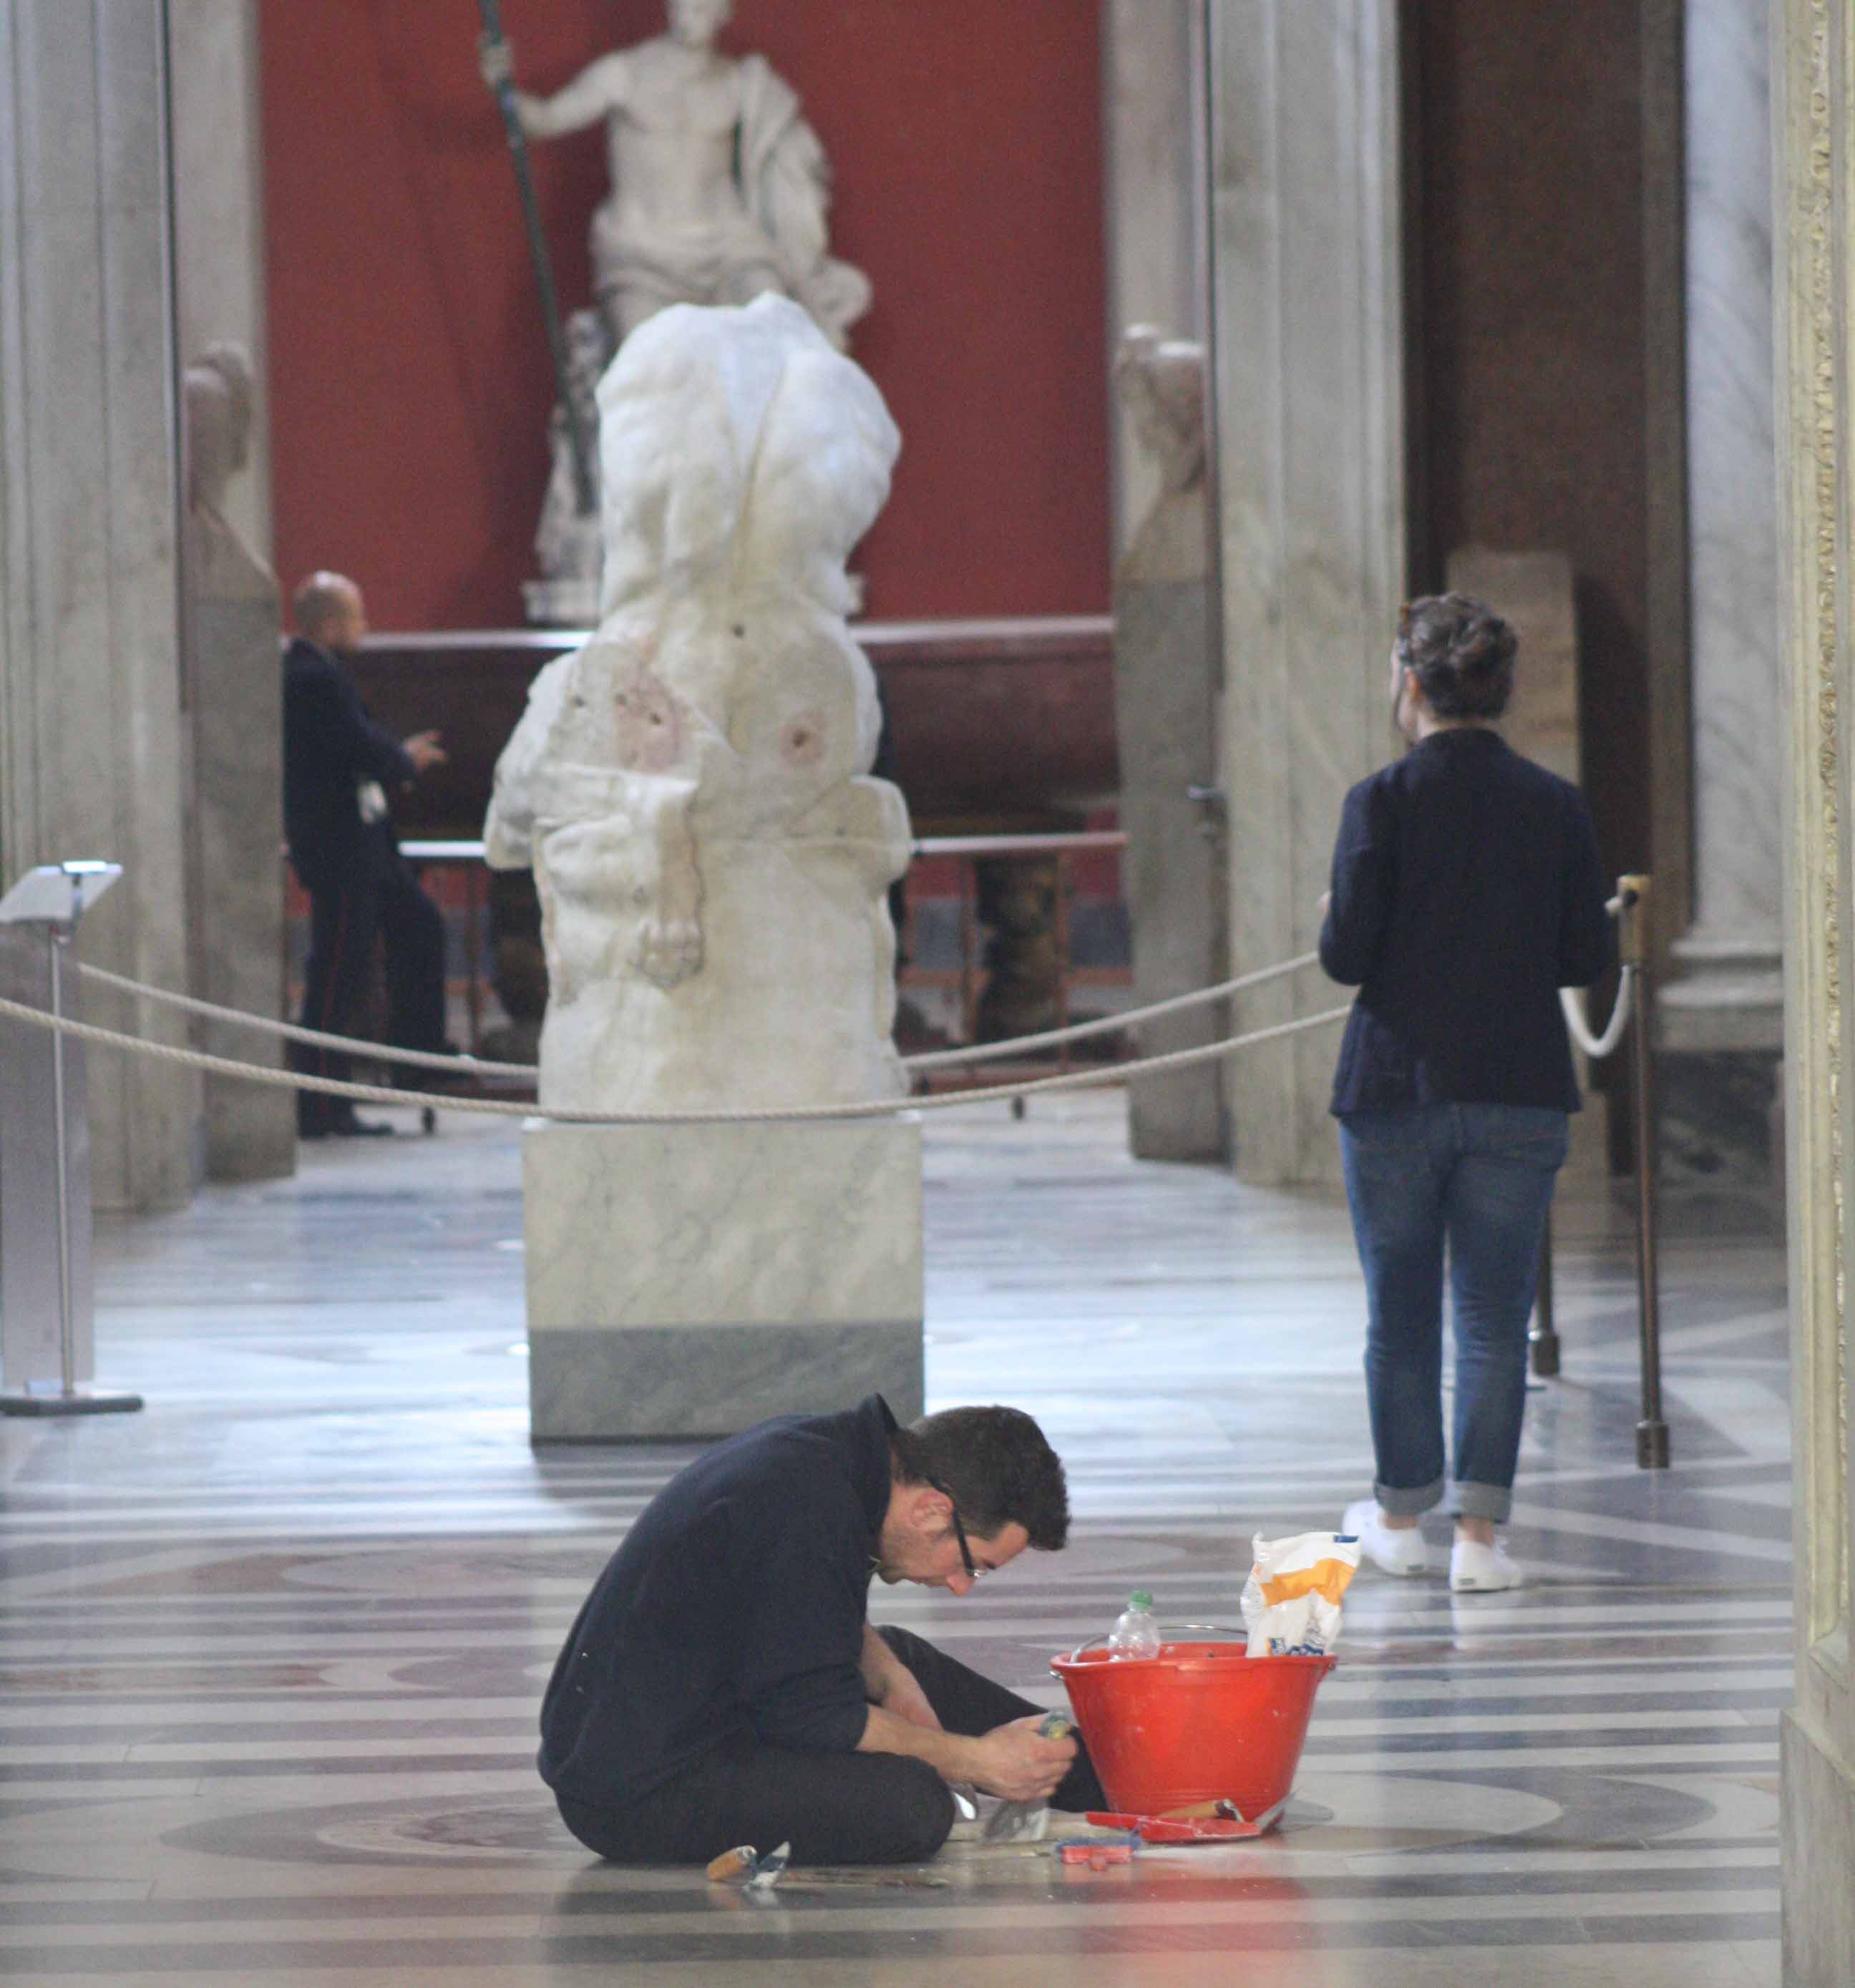 Manutenzione ordinaria dei pavimenti e dei commessi marmorei. Foto © Musei Vaticani